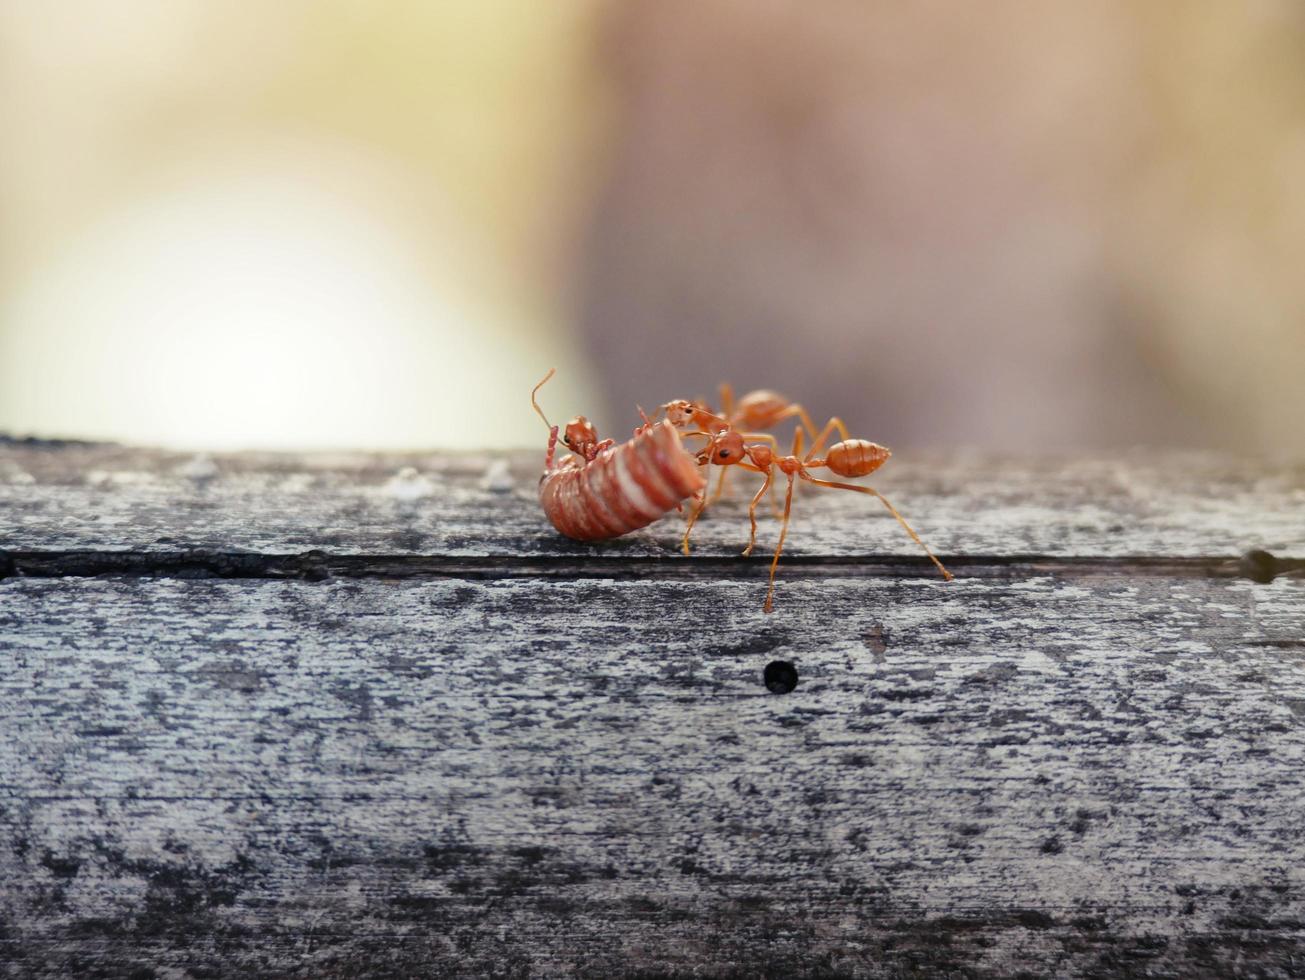 formigas estão ajudando a transportar comida em unidade. foto